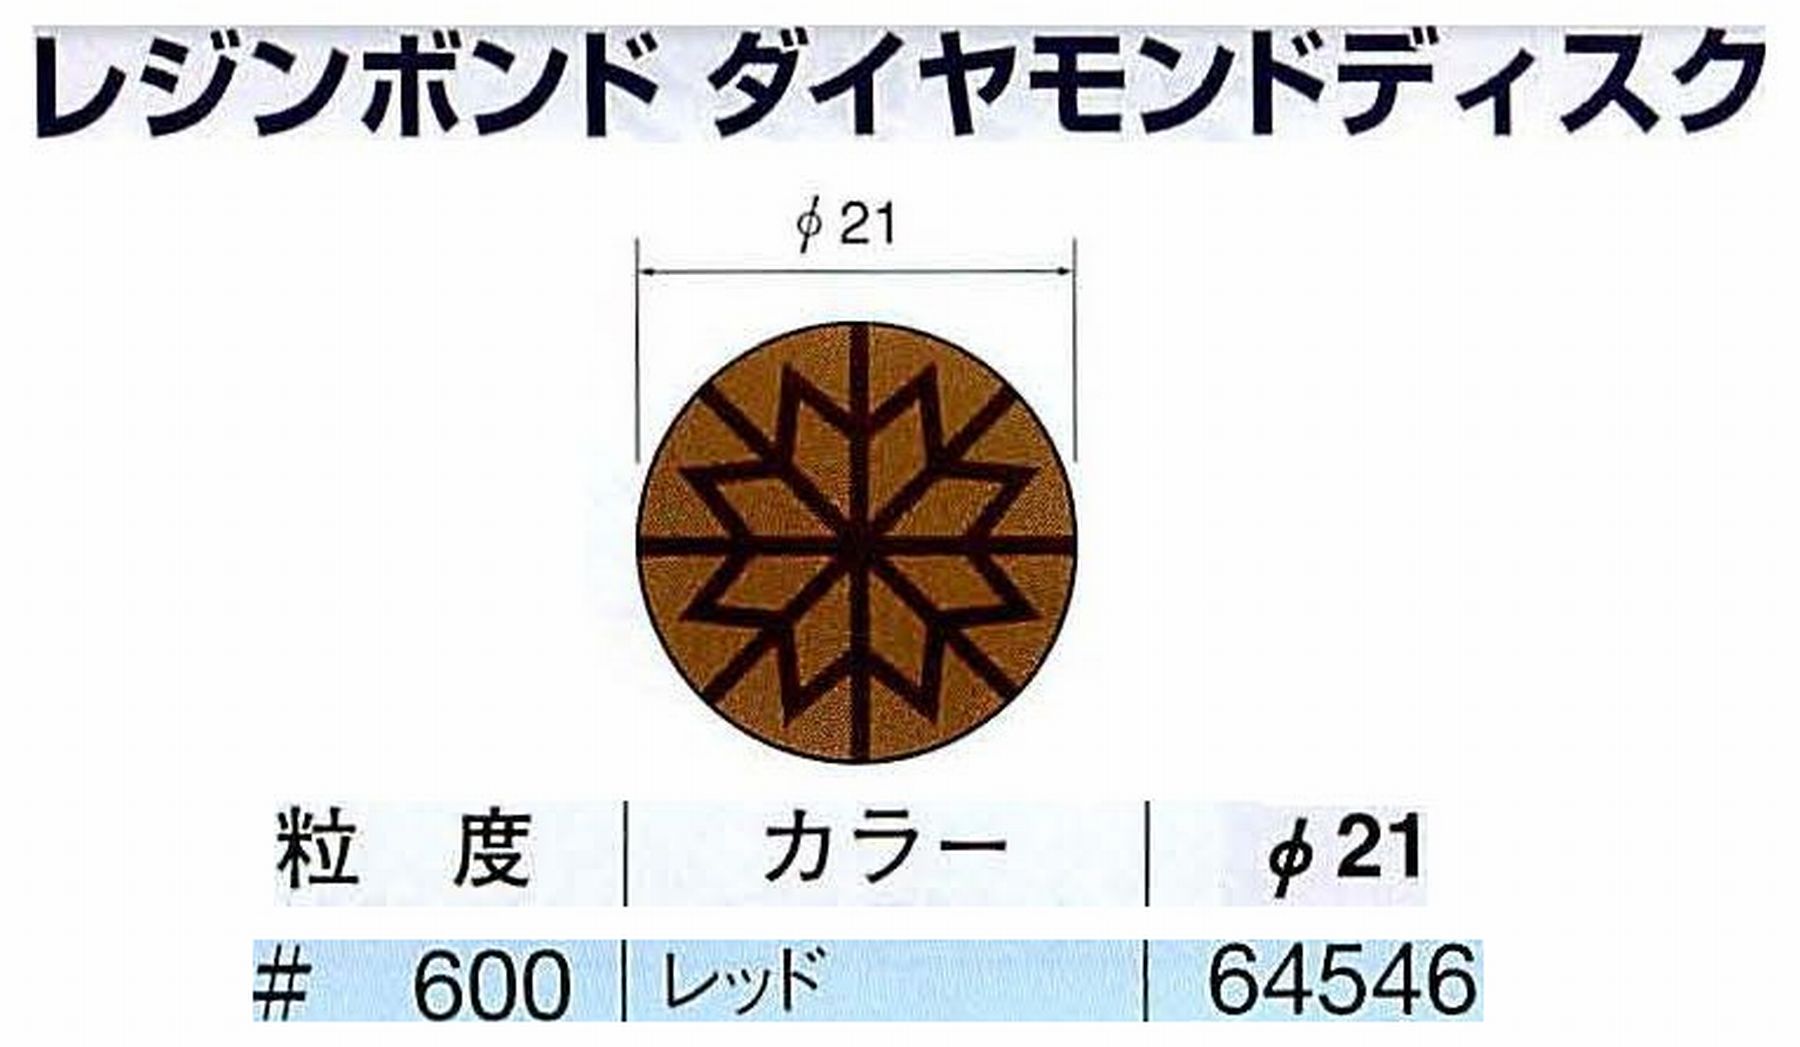 ナカニシ/NAKANISHI アングルグラインダ(電動・エアー) アングルアタッチメント専用工具 レジンボンド ダイヤモンドディスク(パターンタイプ) 64546